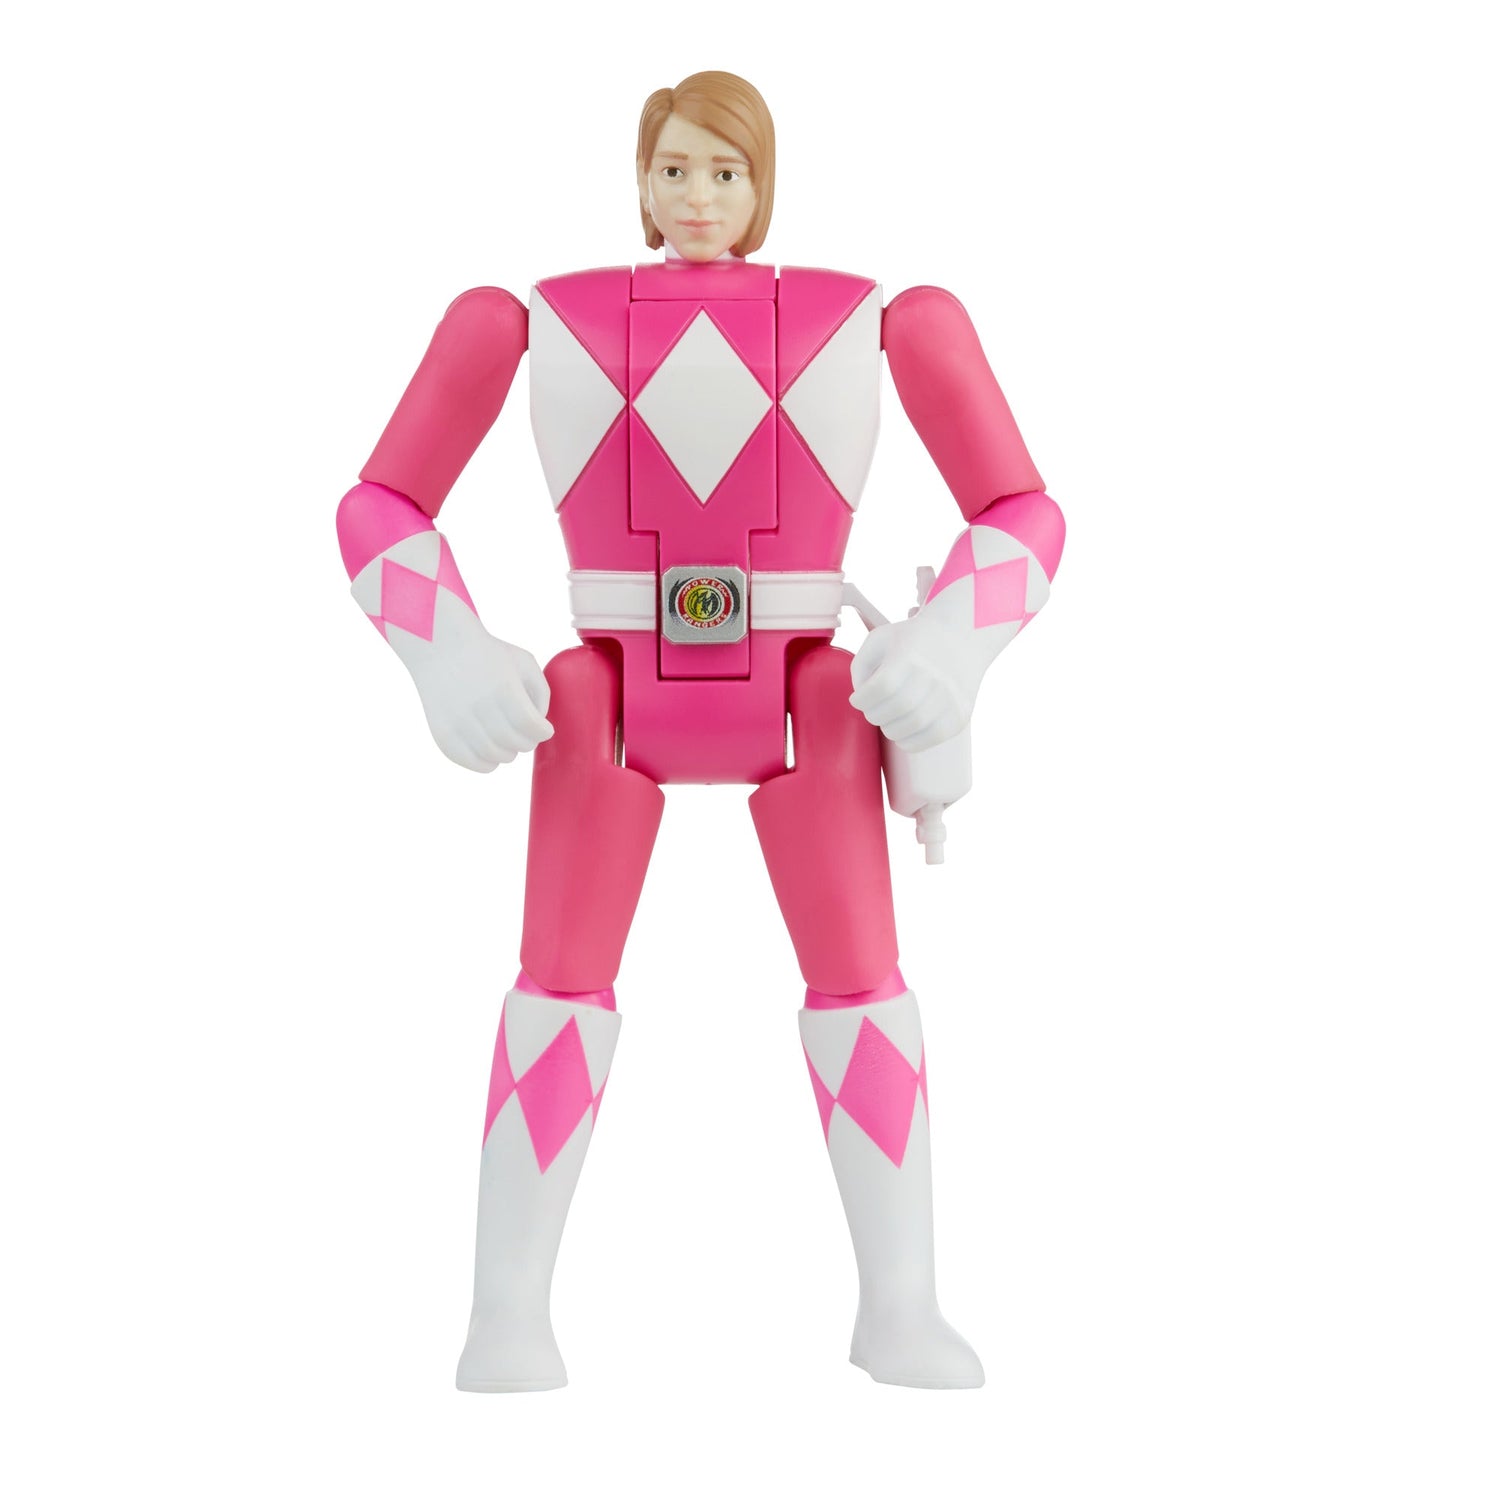 Power Rangers Retro-Morphin Pink Ranger Kimberly